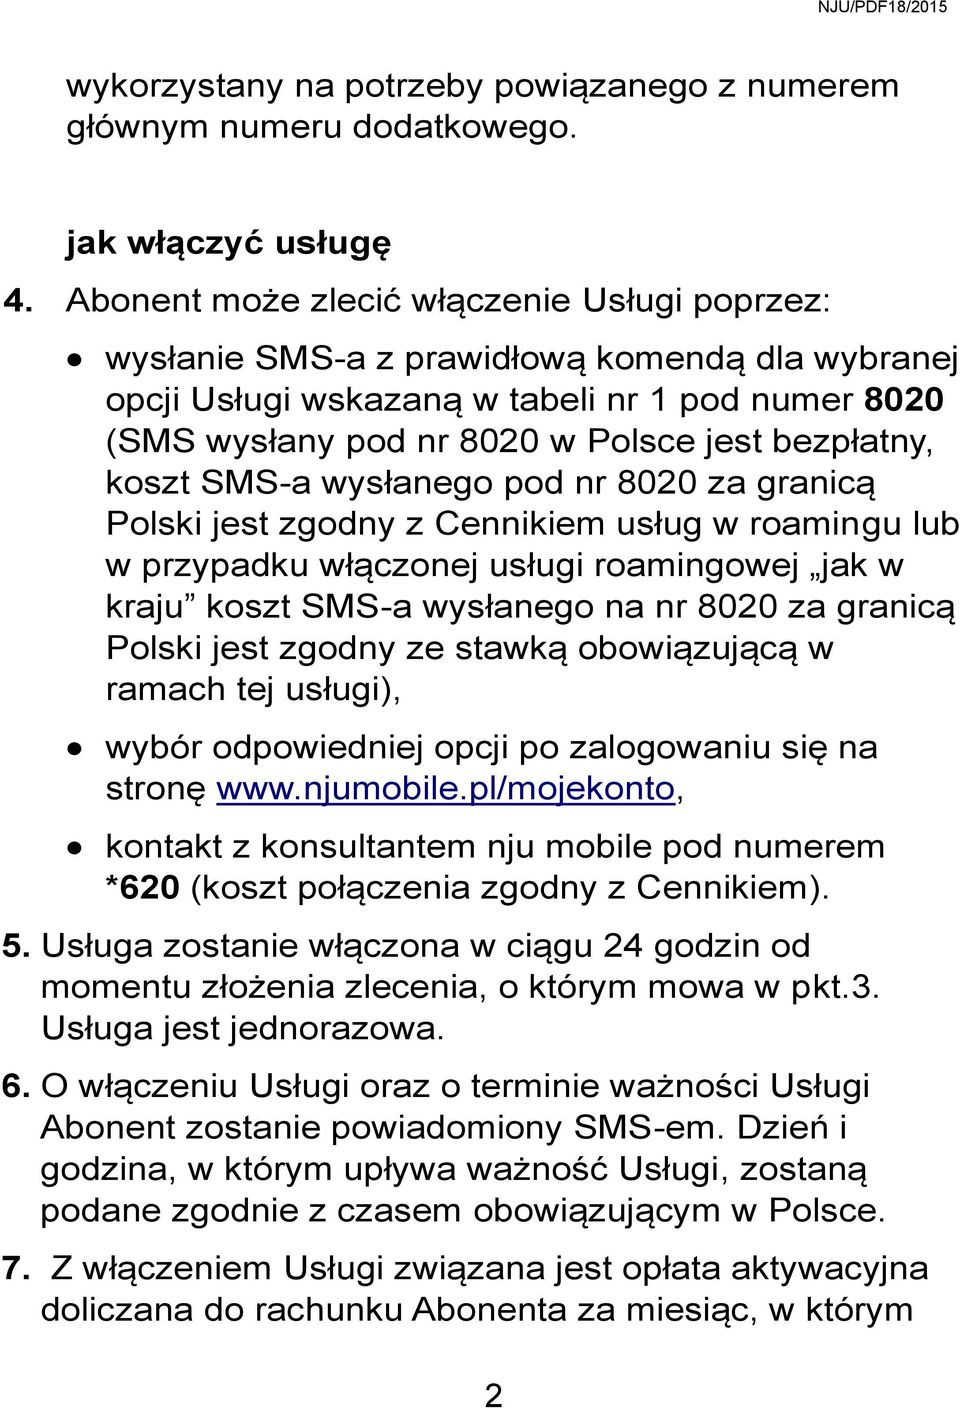 koszt SMS-a wysłanego pod nr 8020 za granicą Polski jest zgodny z Cennikiem usług w roamingu lub w przypadku włączonej usługi roamingowej jak w kraju koszt SMS-a wysłanego na nr 8020 za granicą